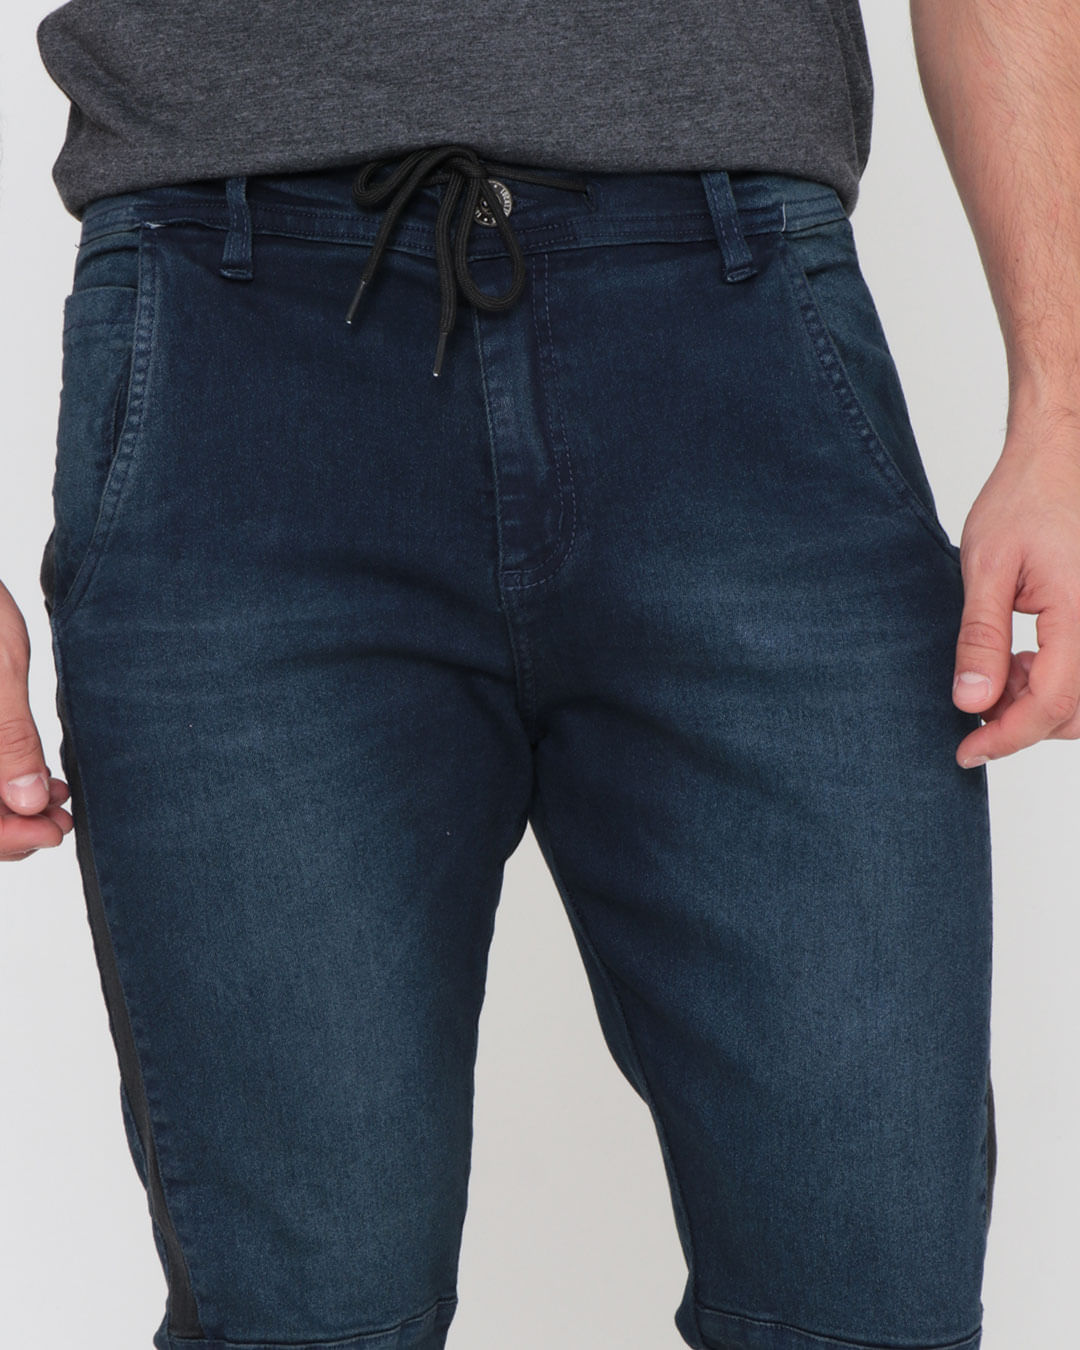 Calca-Jeans-Masculina-Recorte-Jogger-Azul-Escuro